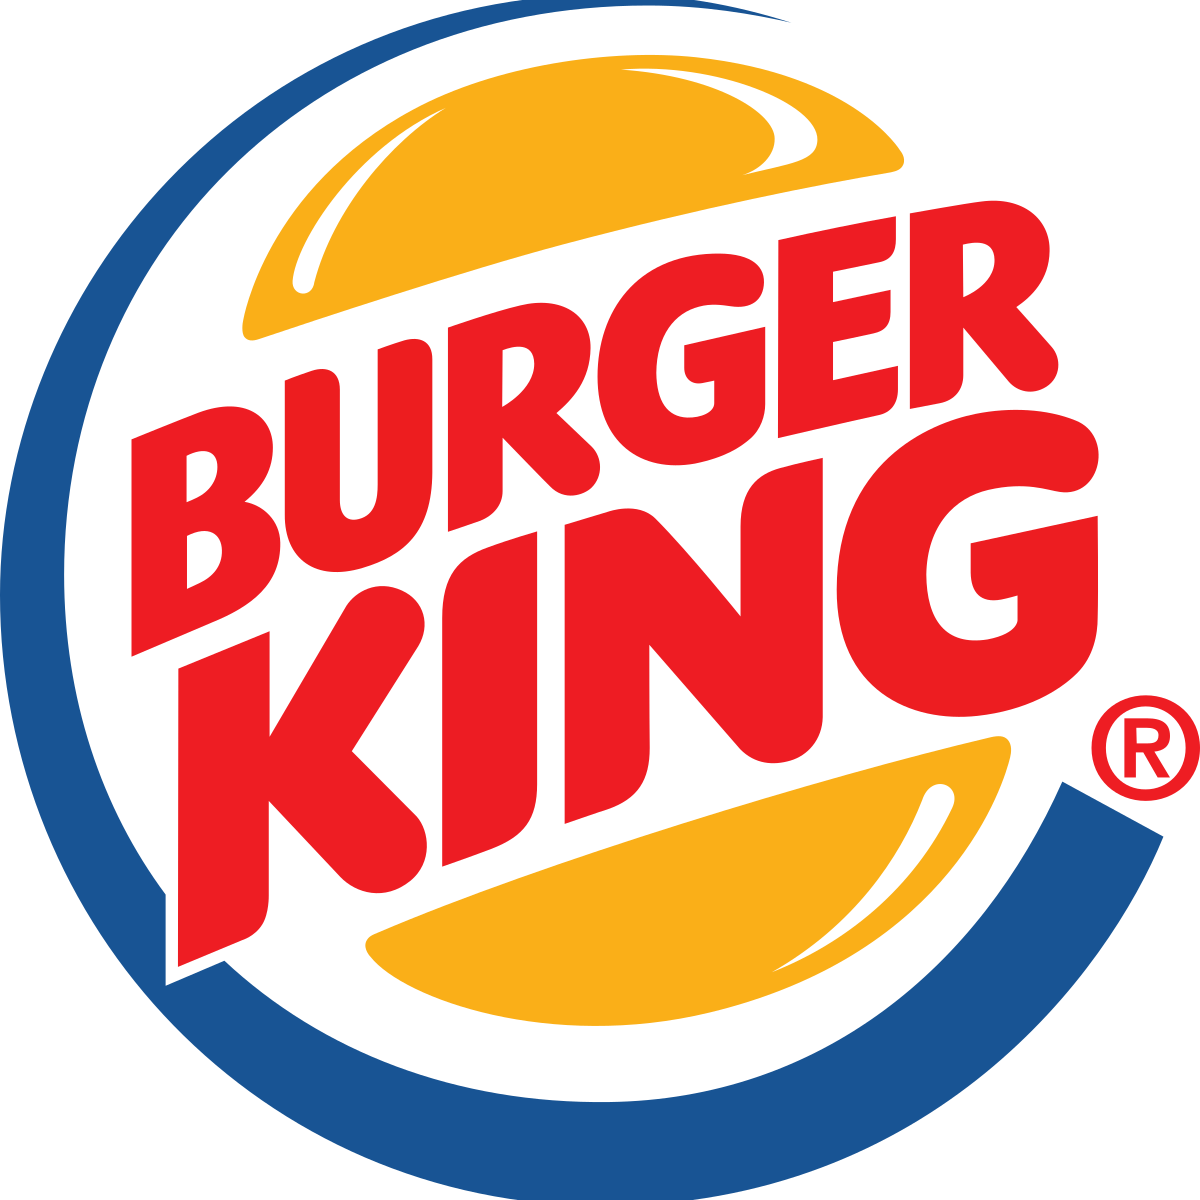 King Hamburger Restaurant Food Fast Burger Roseville PNG Image